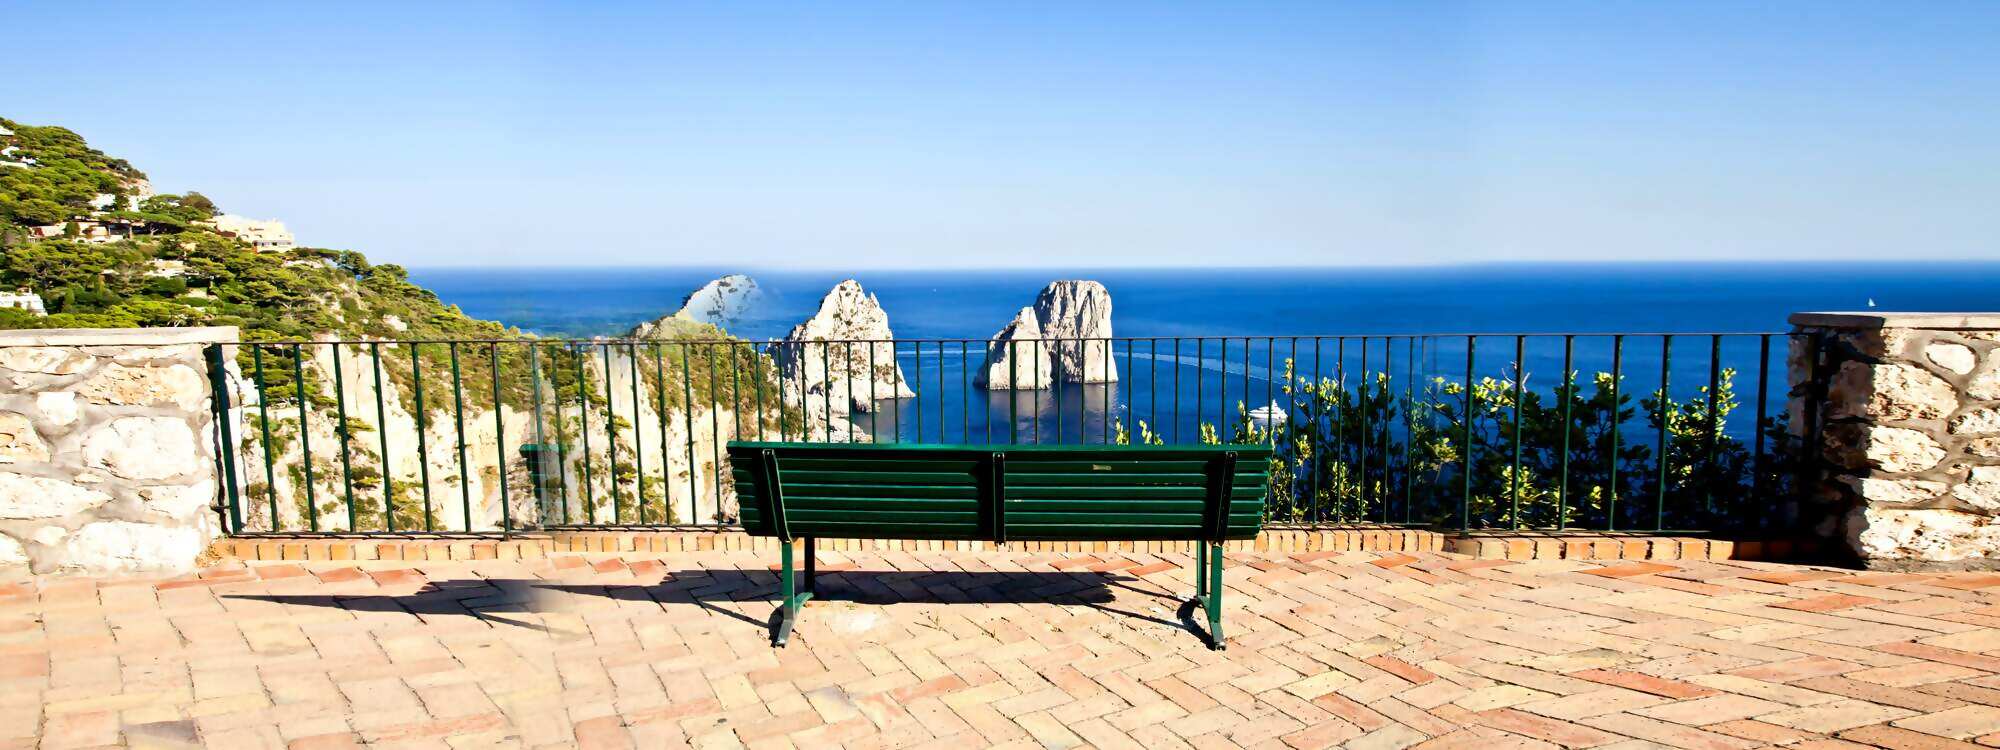 Insel Urlaub Capri